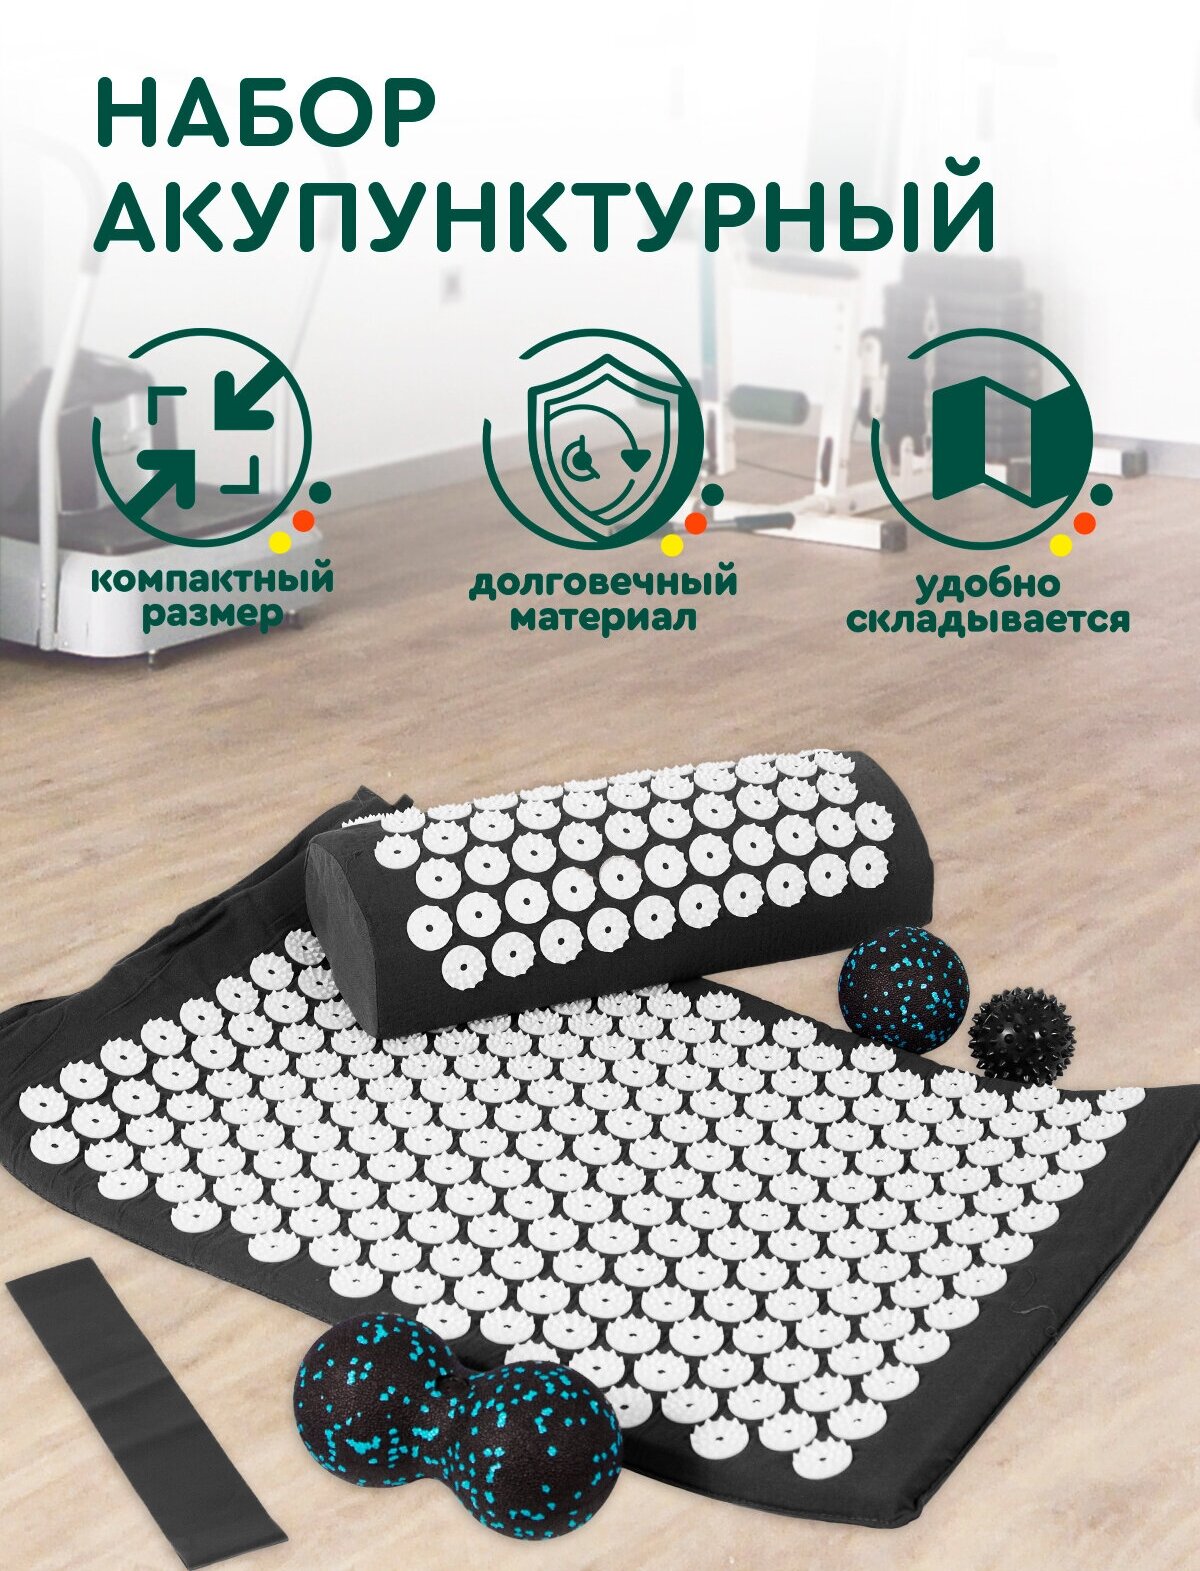 Массажный набор аппликатор Кузнецова 7 в 1 (черный) Hans&Helma акупунктурный коврик, 2 валика, 2 мяча, резинка, сумка - фотография № 1